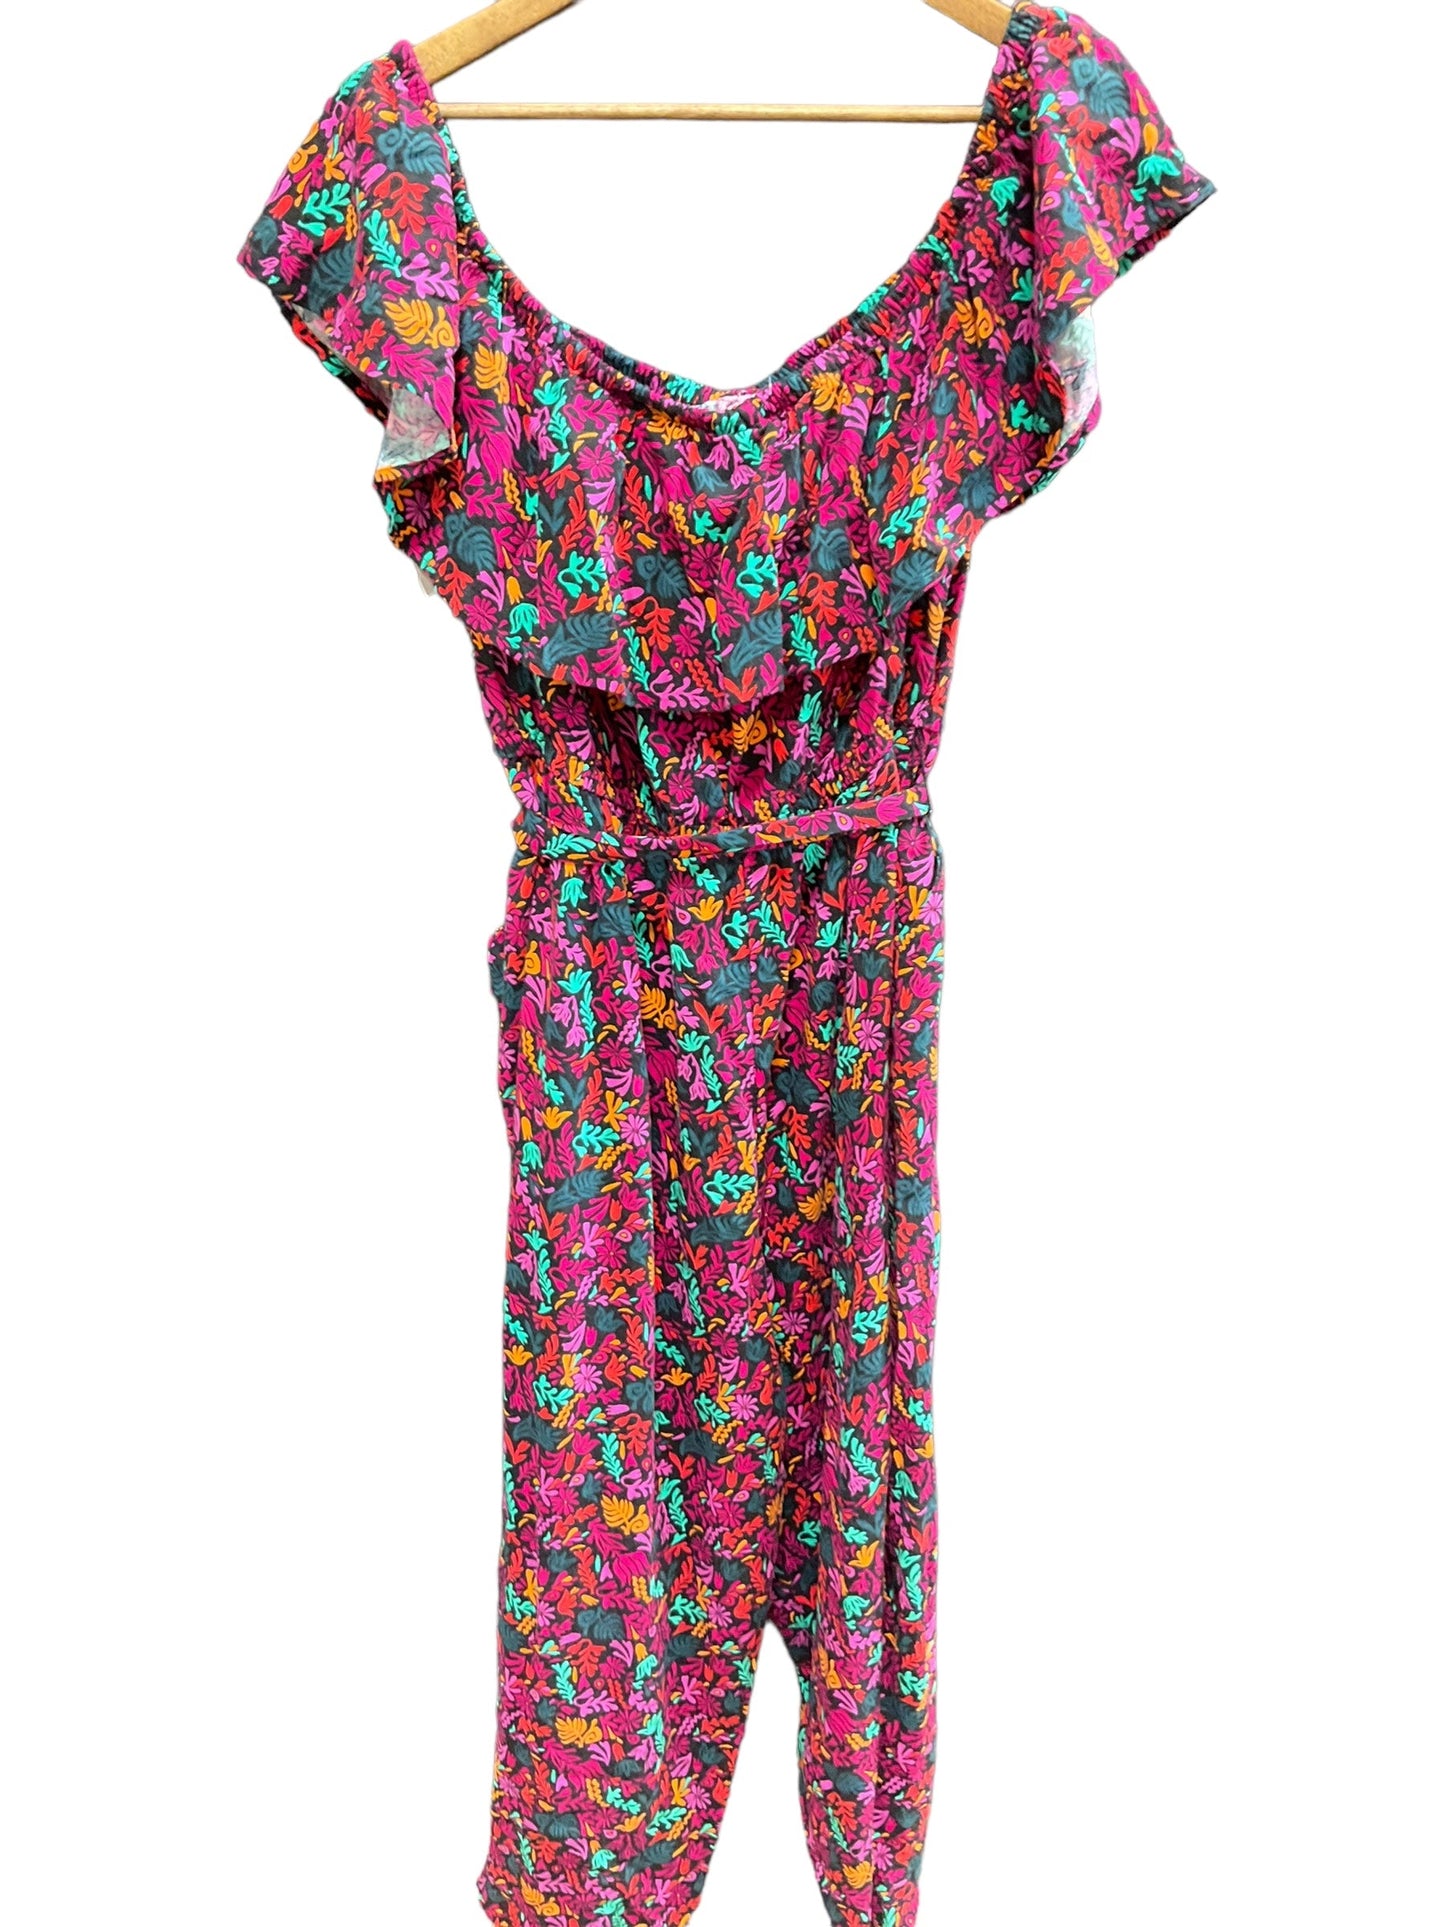 Multi-colored Jumpsuit Ava & Viv, Size Xl